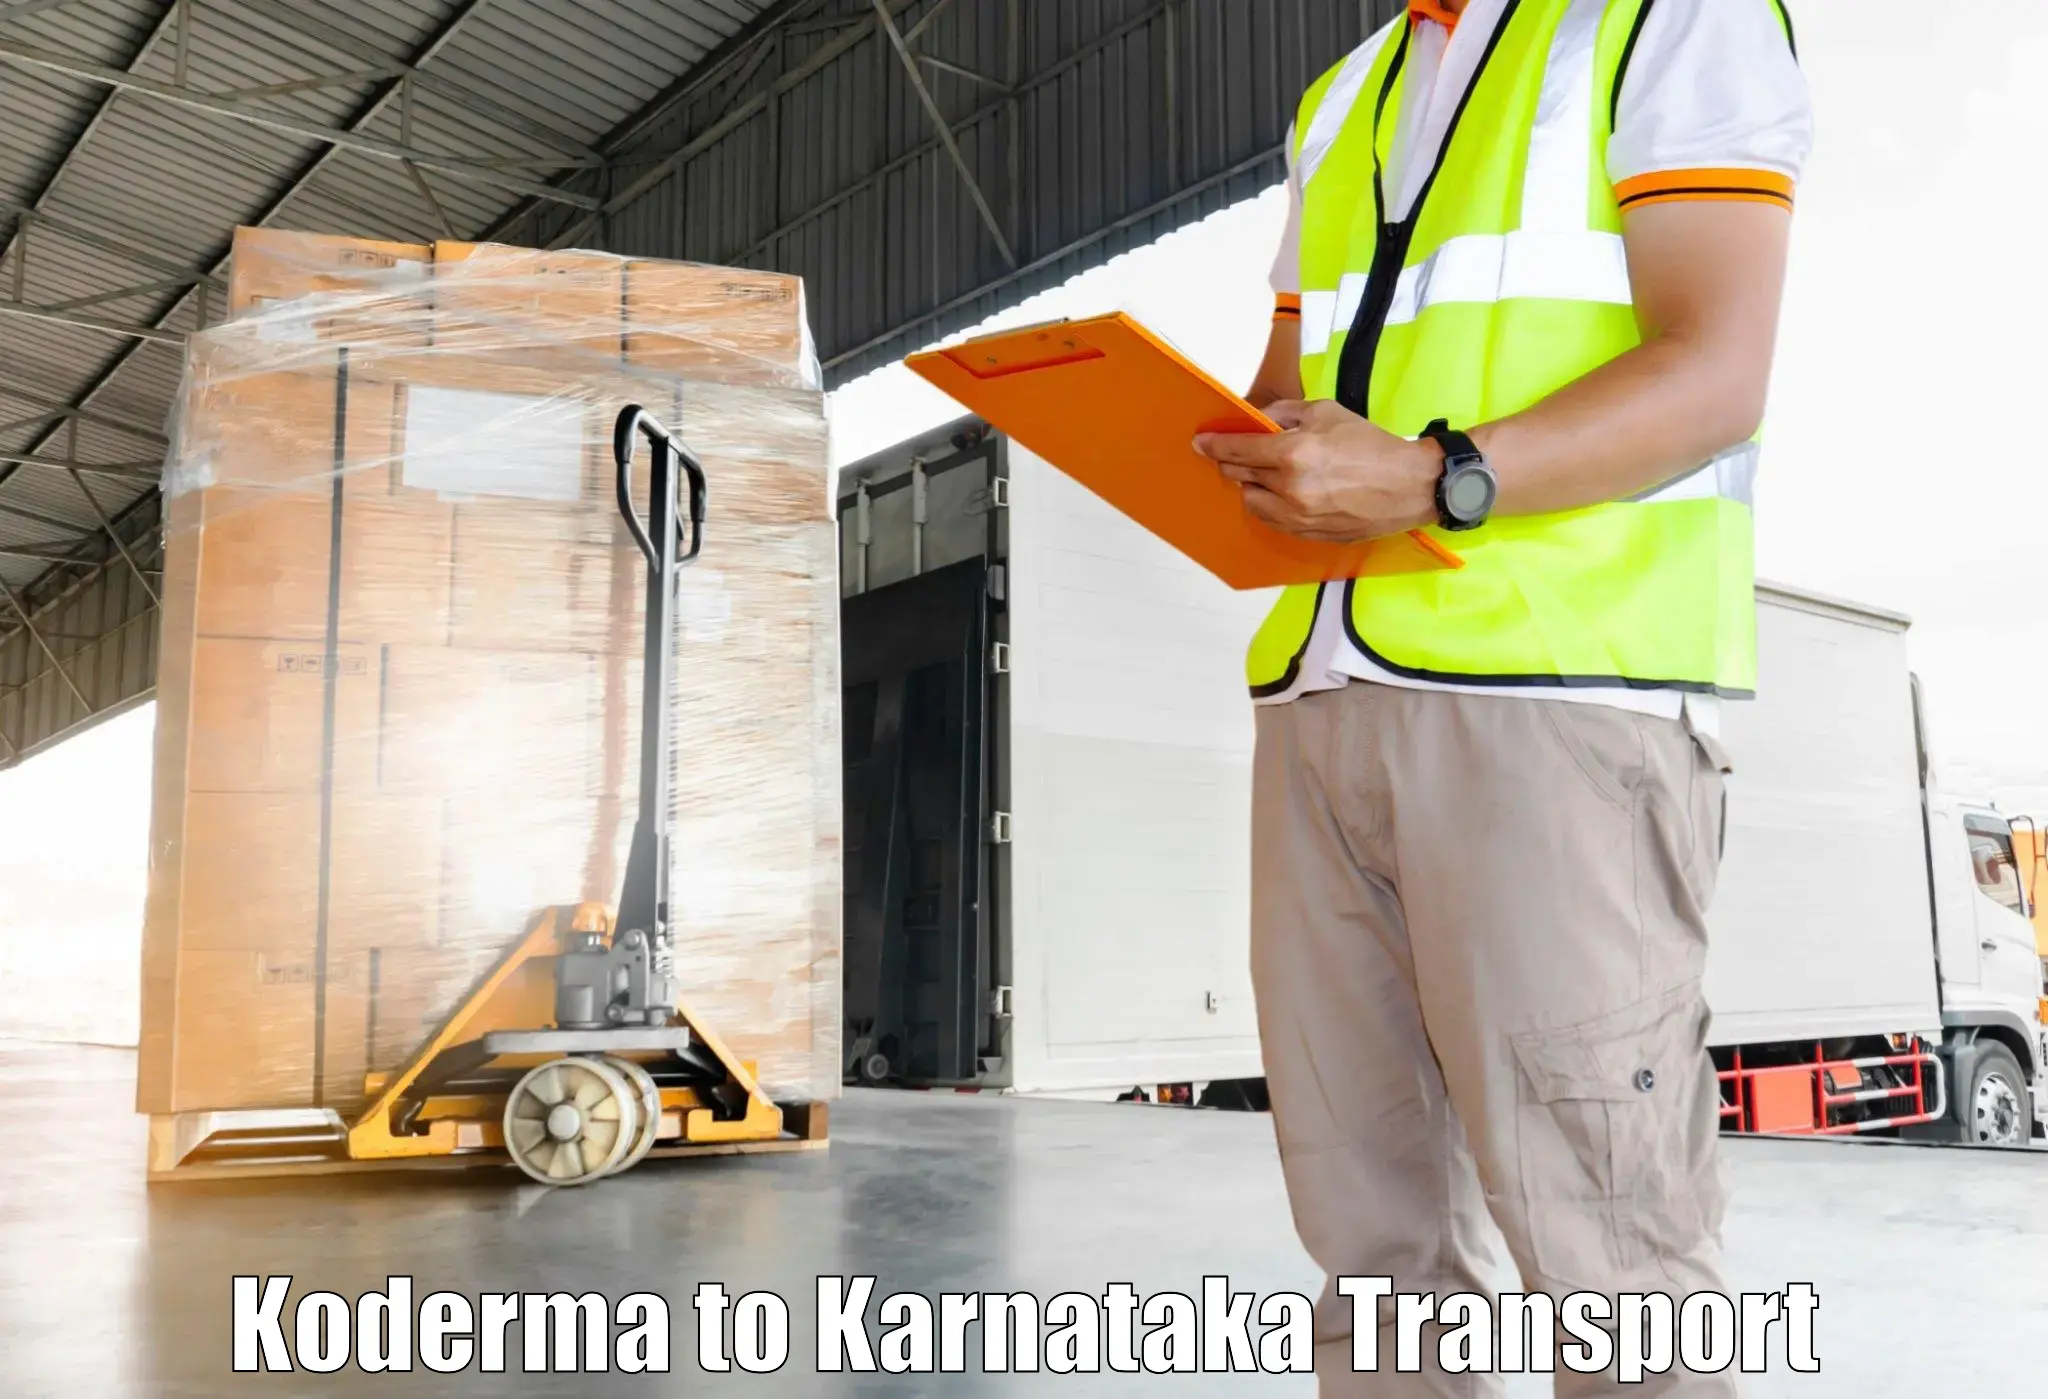 Two wheeler transport services Koderma to Bengaluru